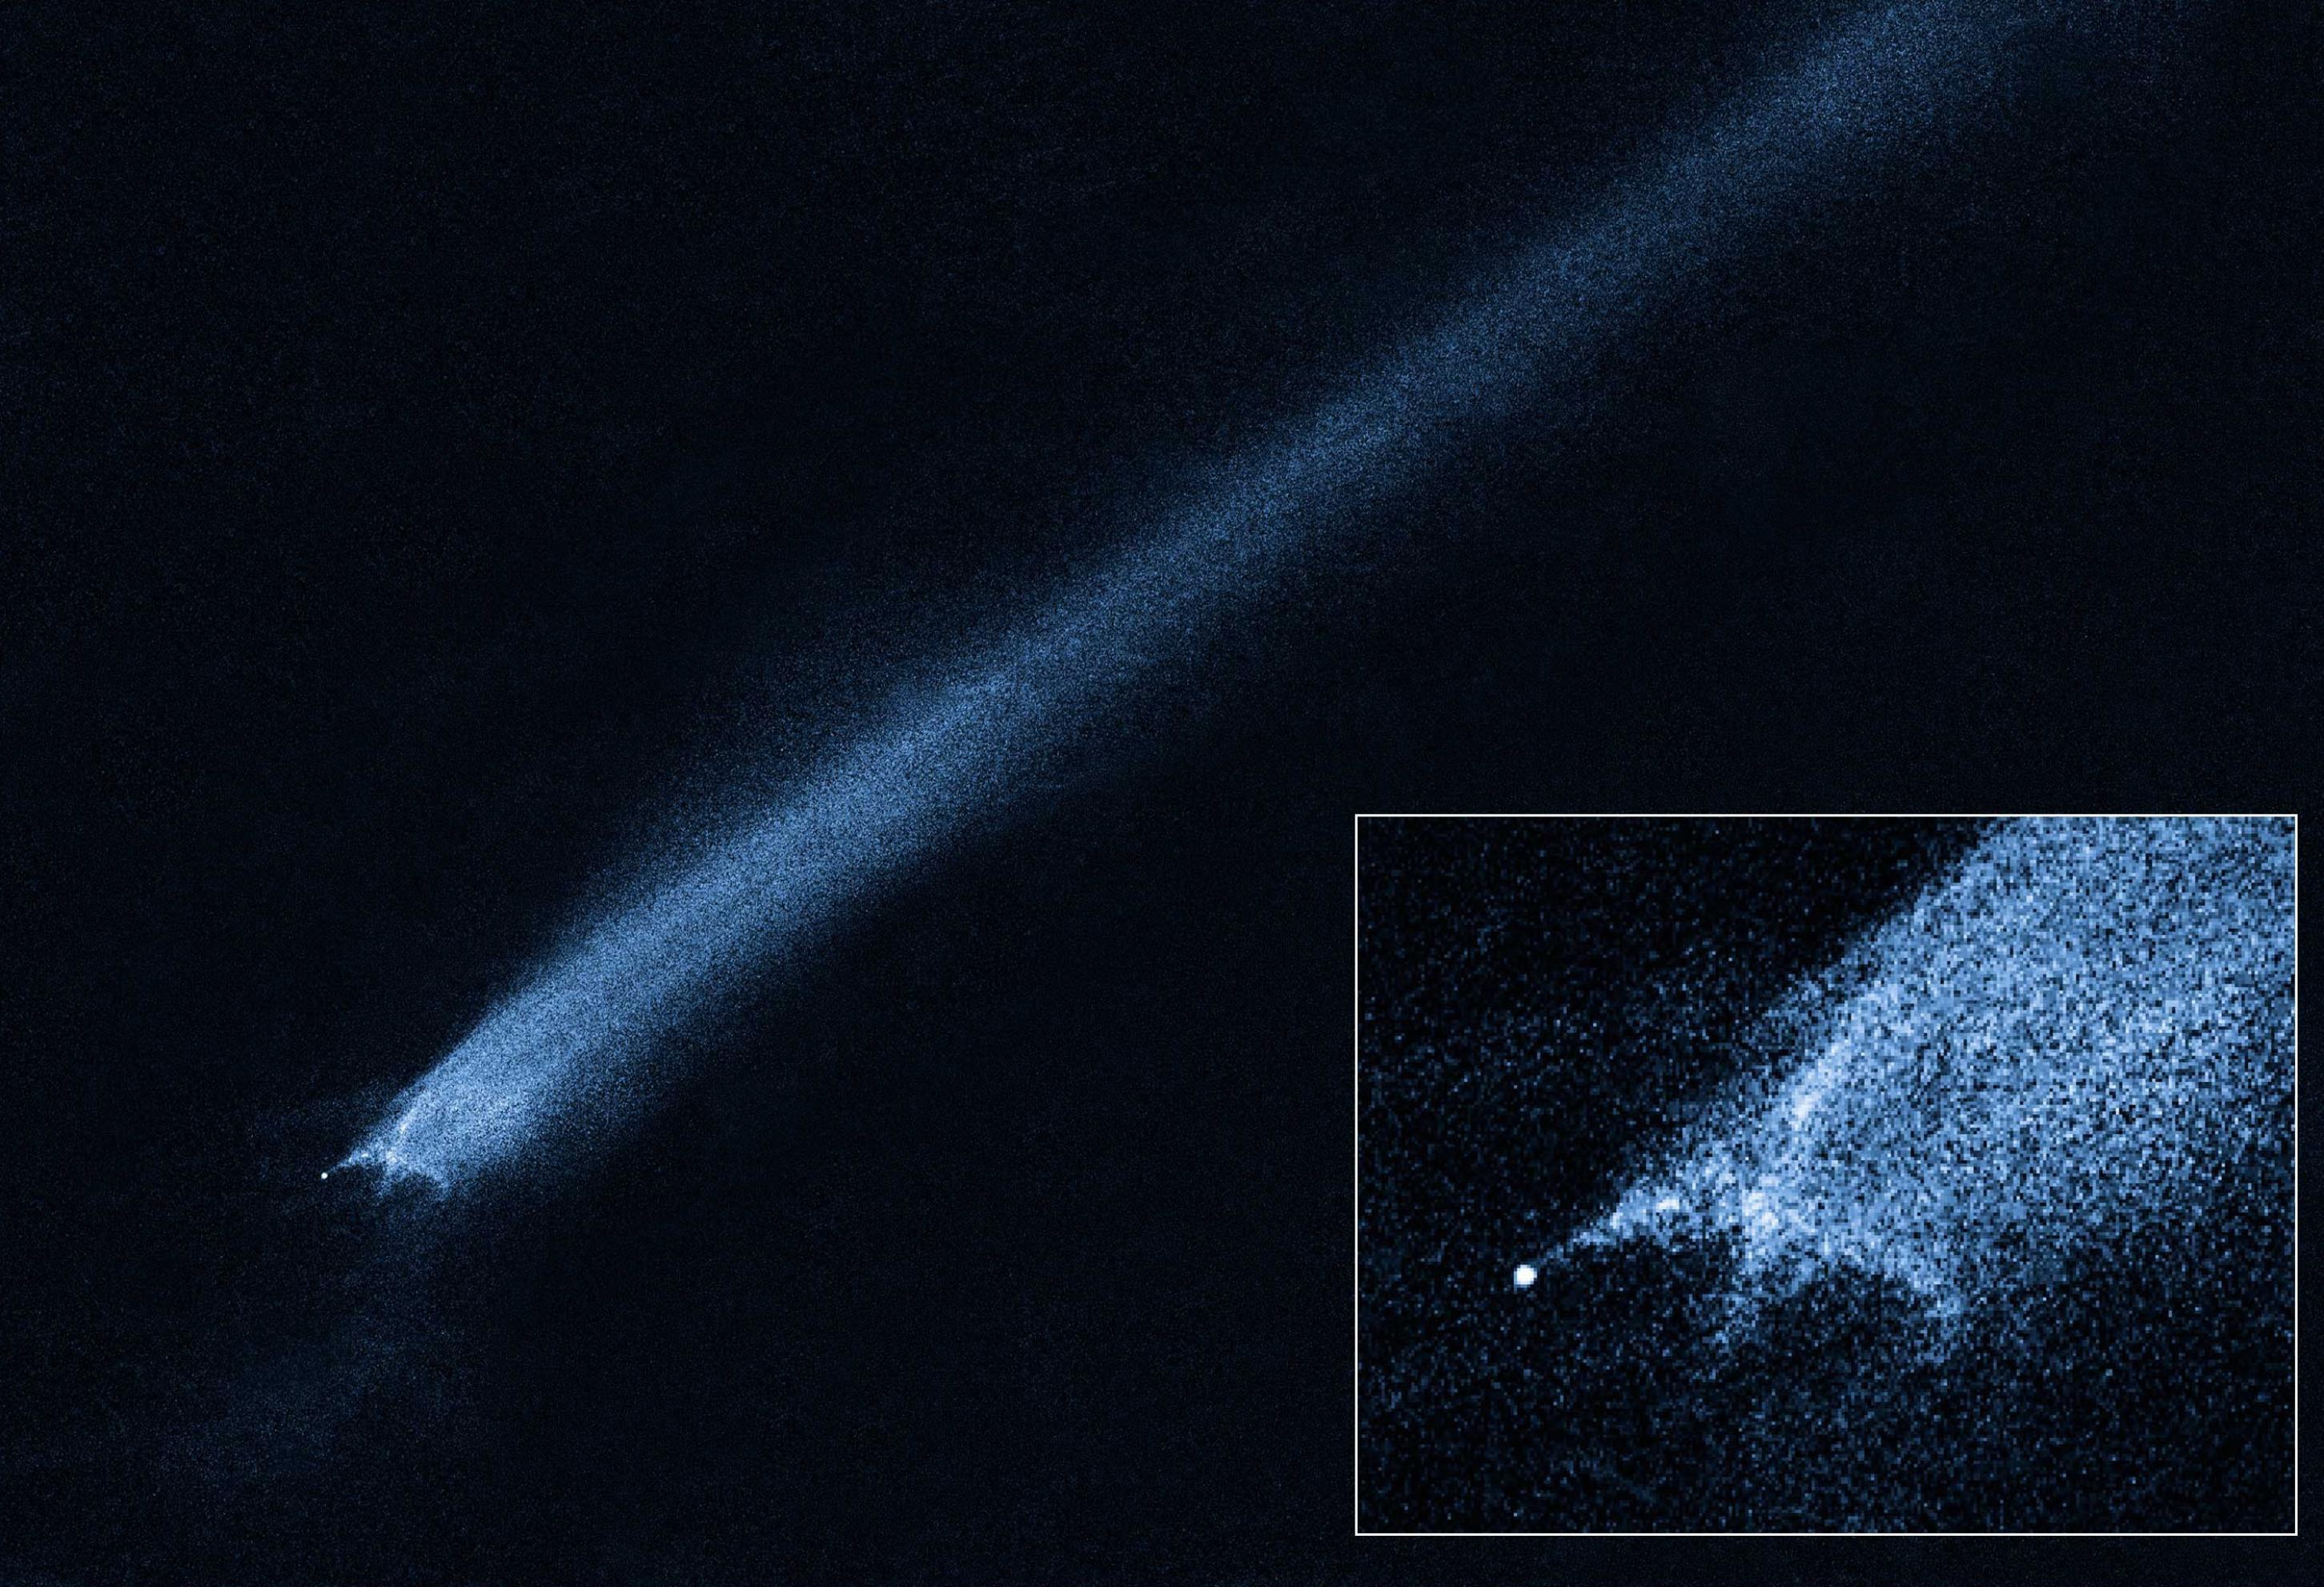 Von einem winzigen hellen Punkt geht eine grob x-förmige, blaue Wolke aus, die sich als Striemen übers gesamte Bild zieht: Ein Asteroid des Hauptgürtels mit einem Schweif.